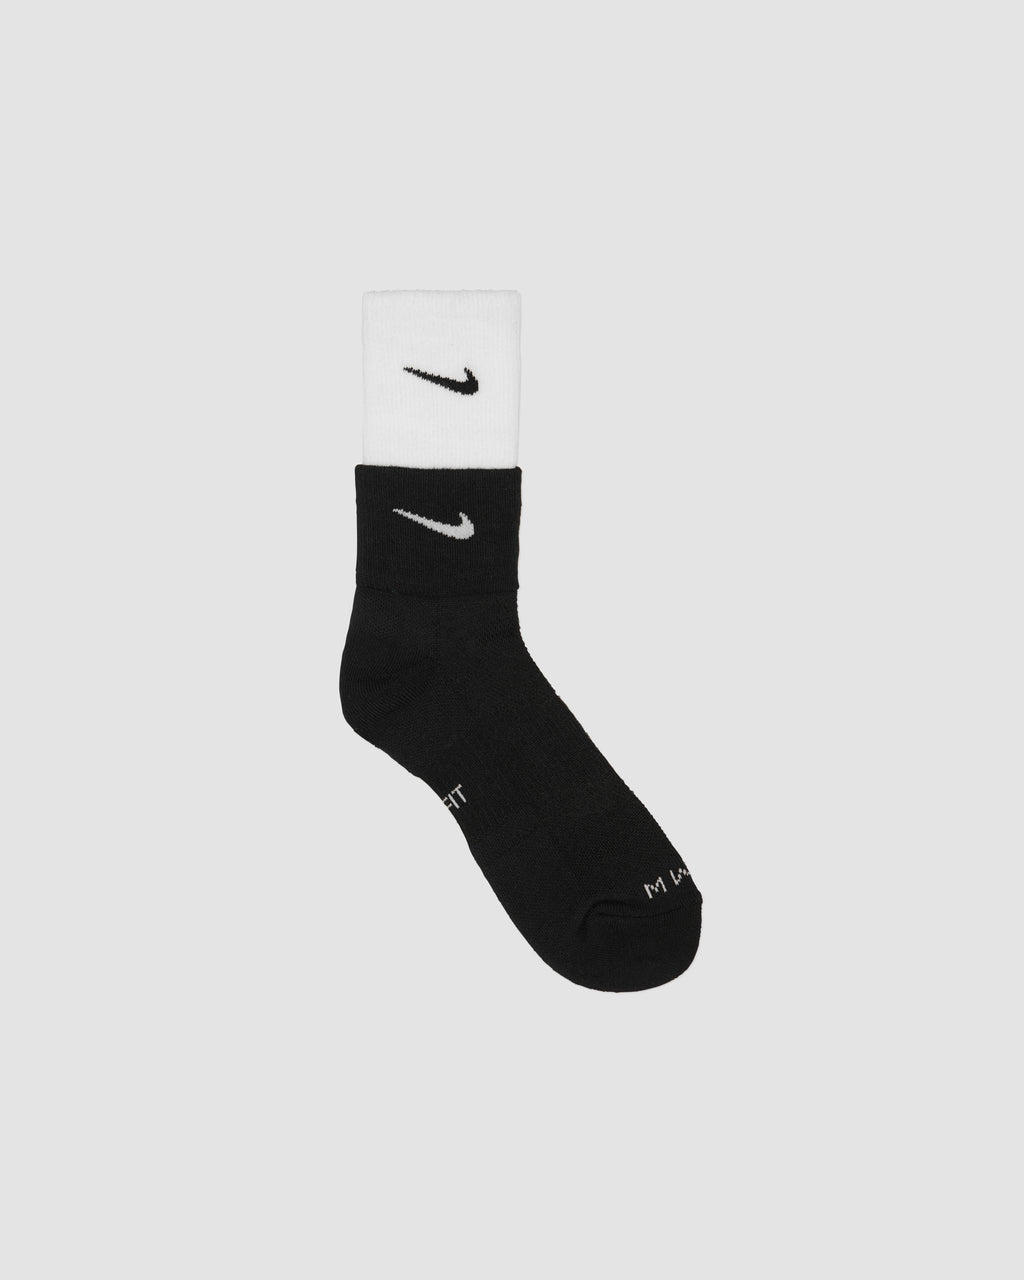 mmw nike socks